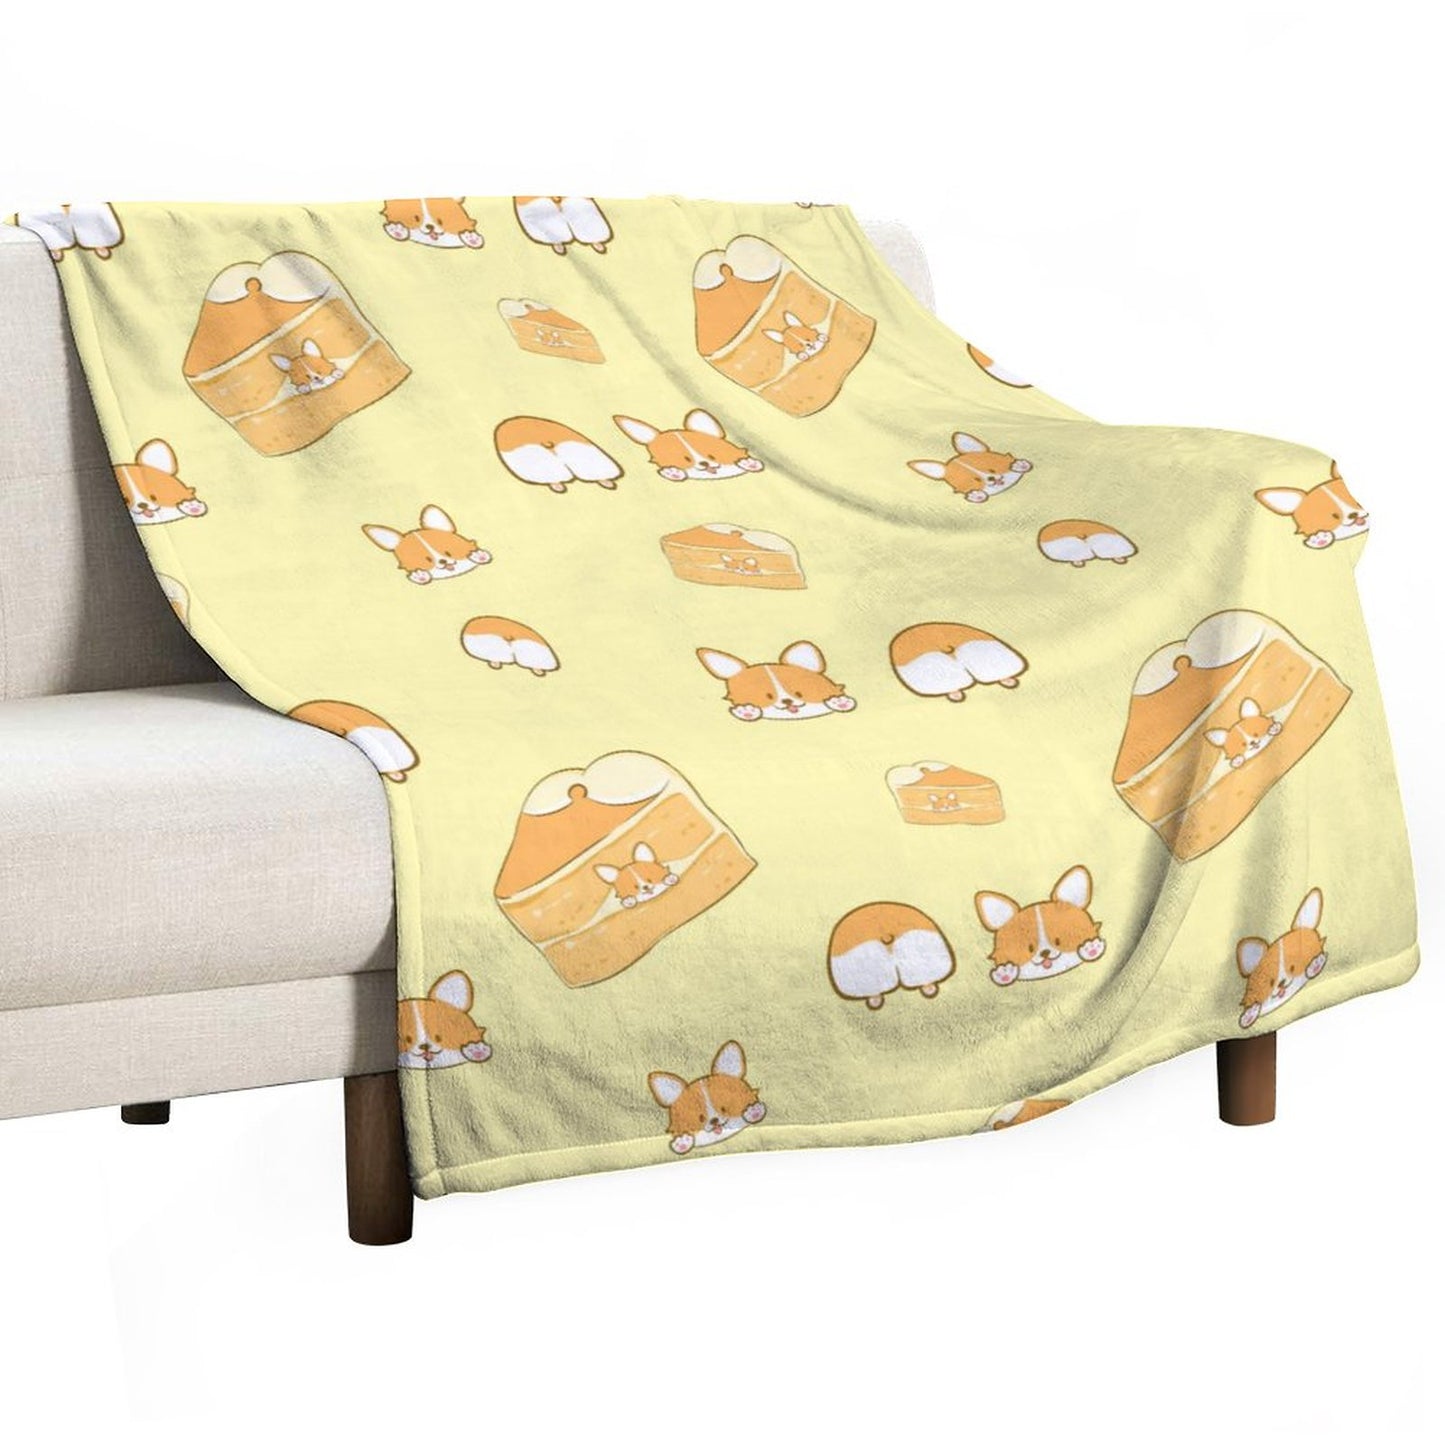 Online DIY Blanket Tile Pattern Dog Corgi Cake Yellow Cute